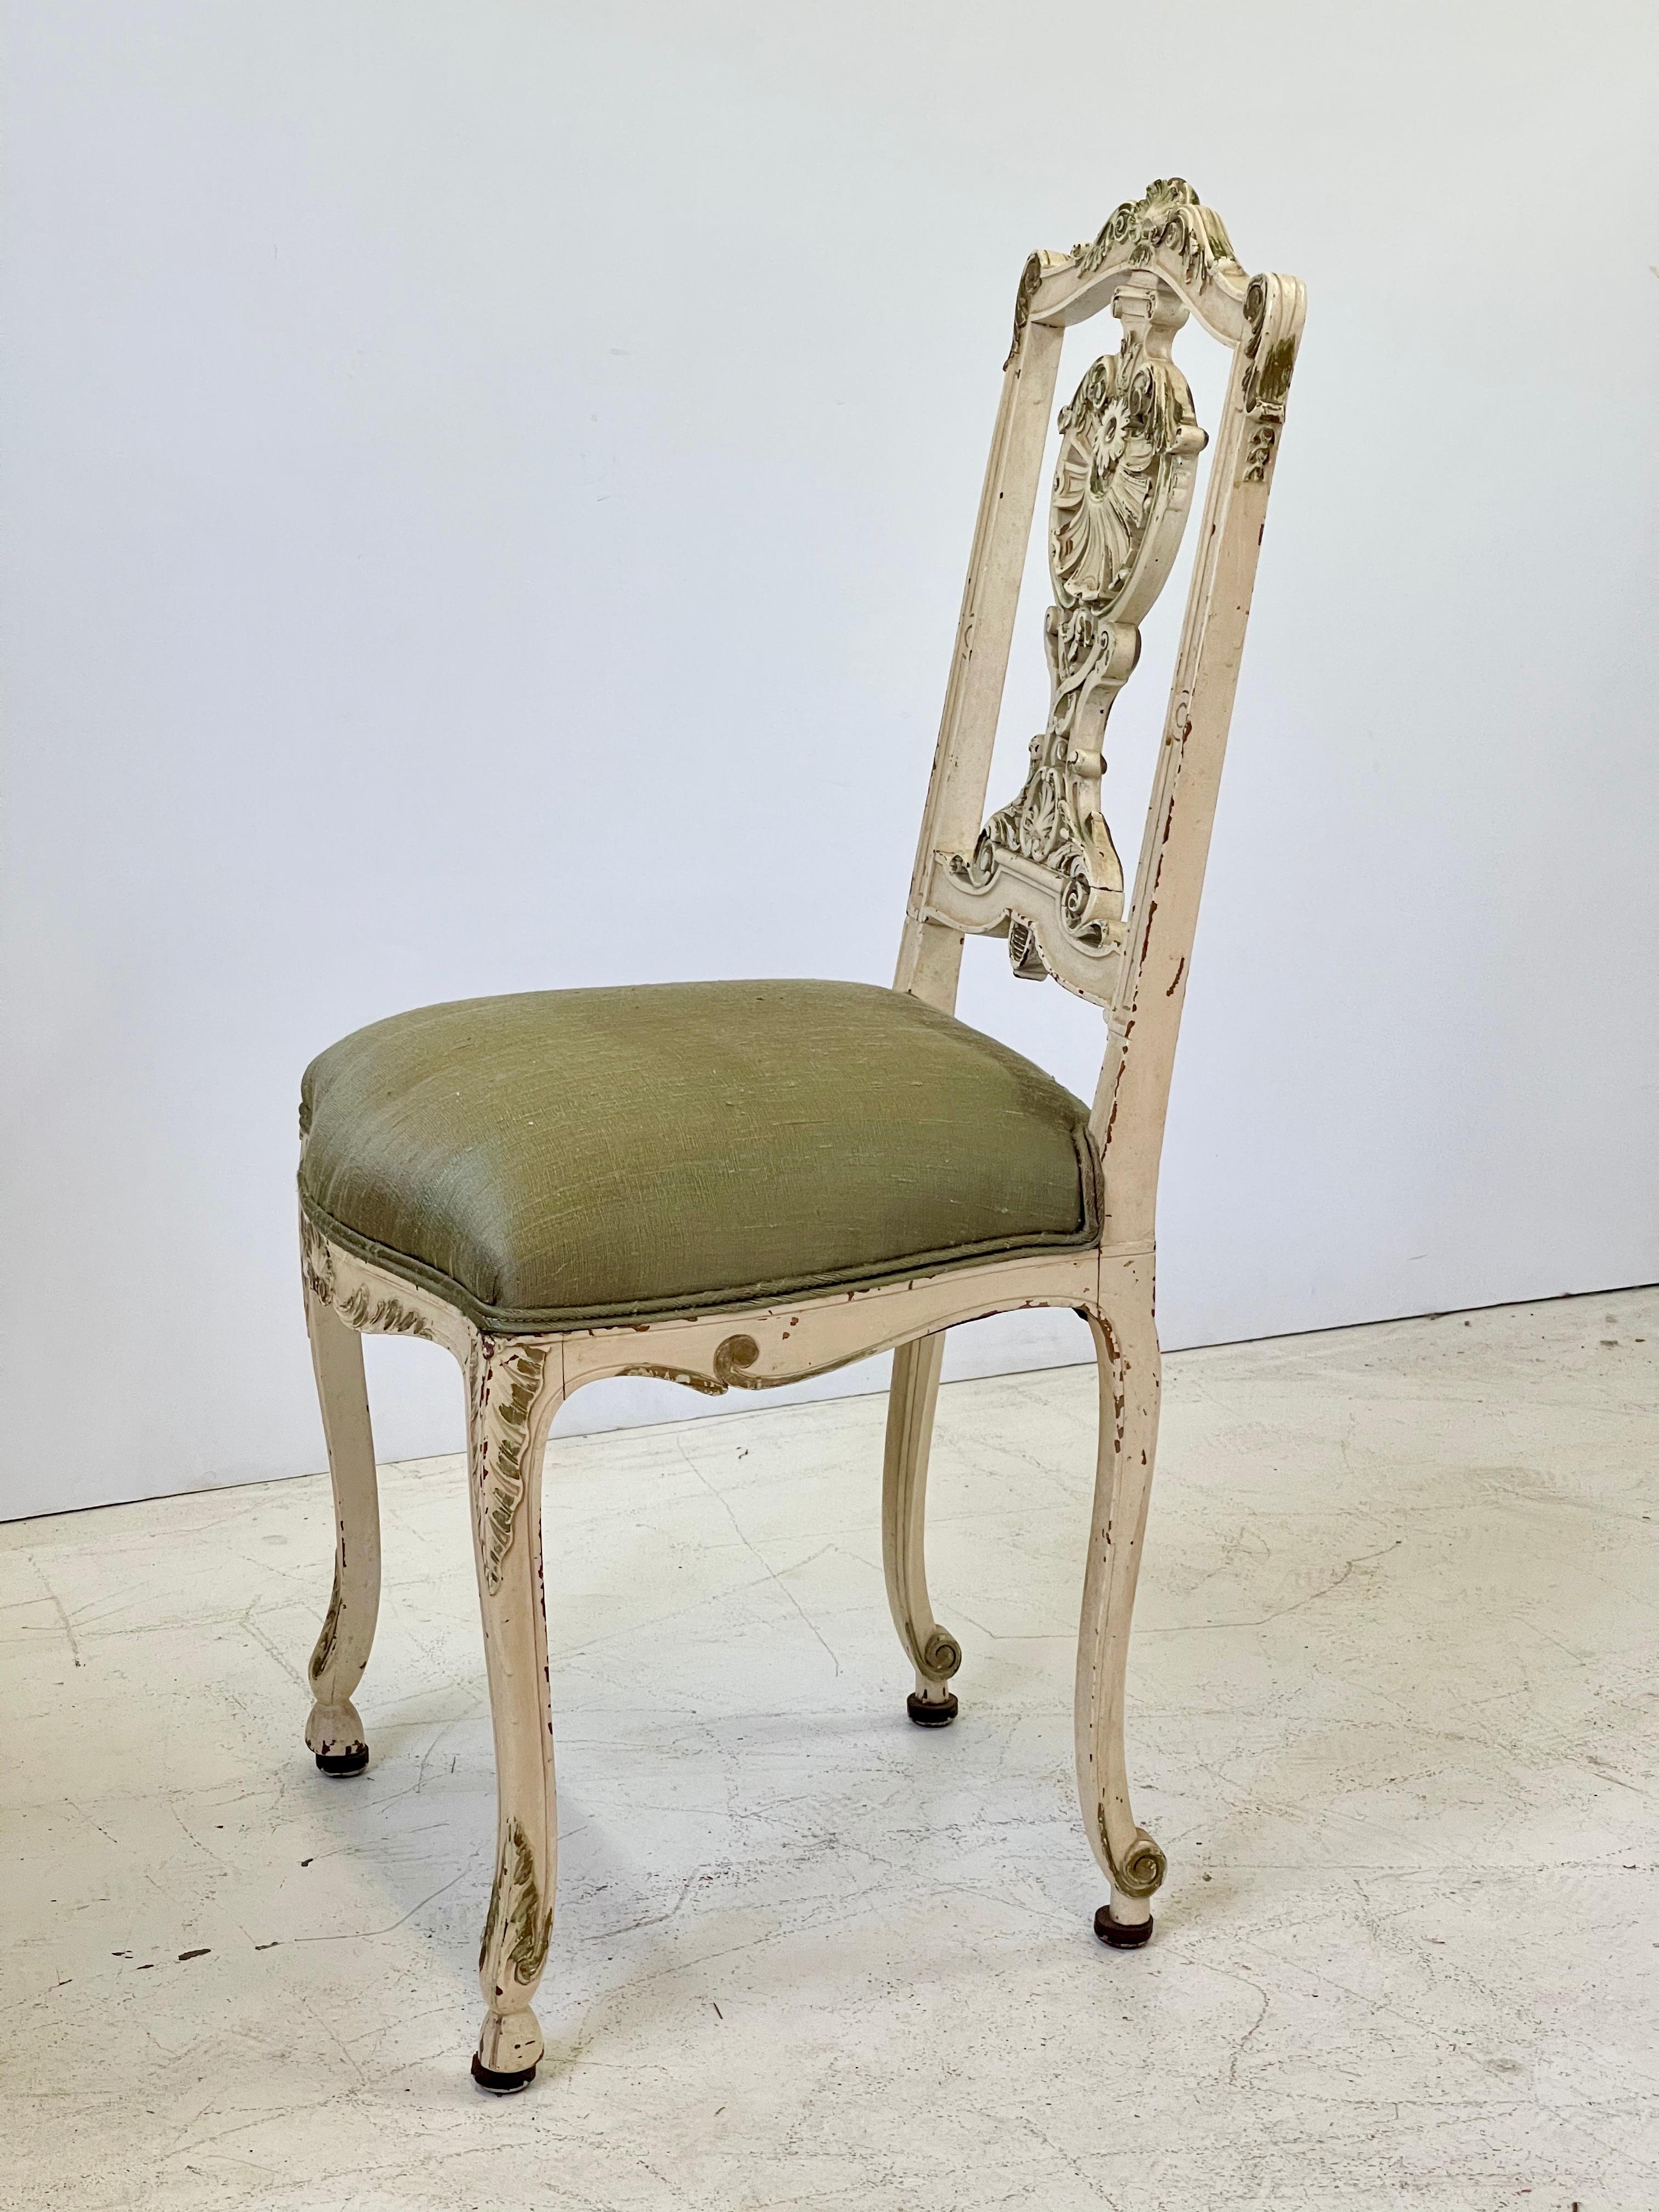 Vanity ou petite chaise d'appoint italienne du début du XXe siècle, finement sculptée dans le style Louis XV. La chaise est peinte en crème avec des détails dorés qui se sont magnifiquement usés avec le temps. Le siège a été nouvellement tapissé